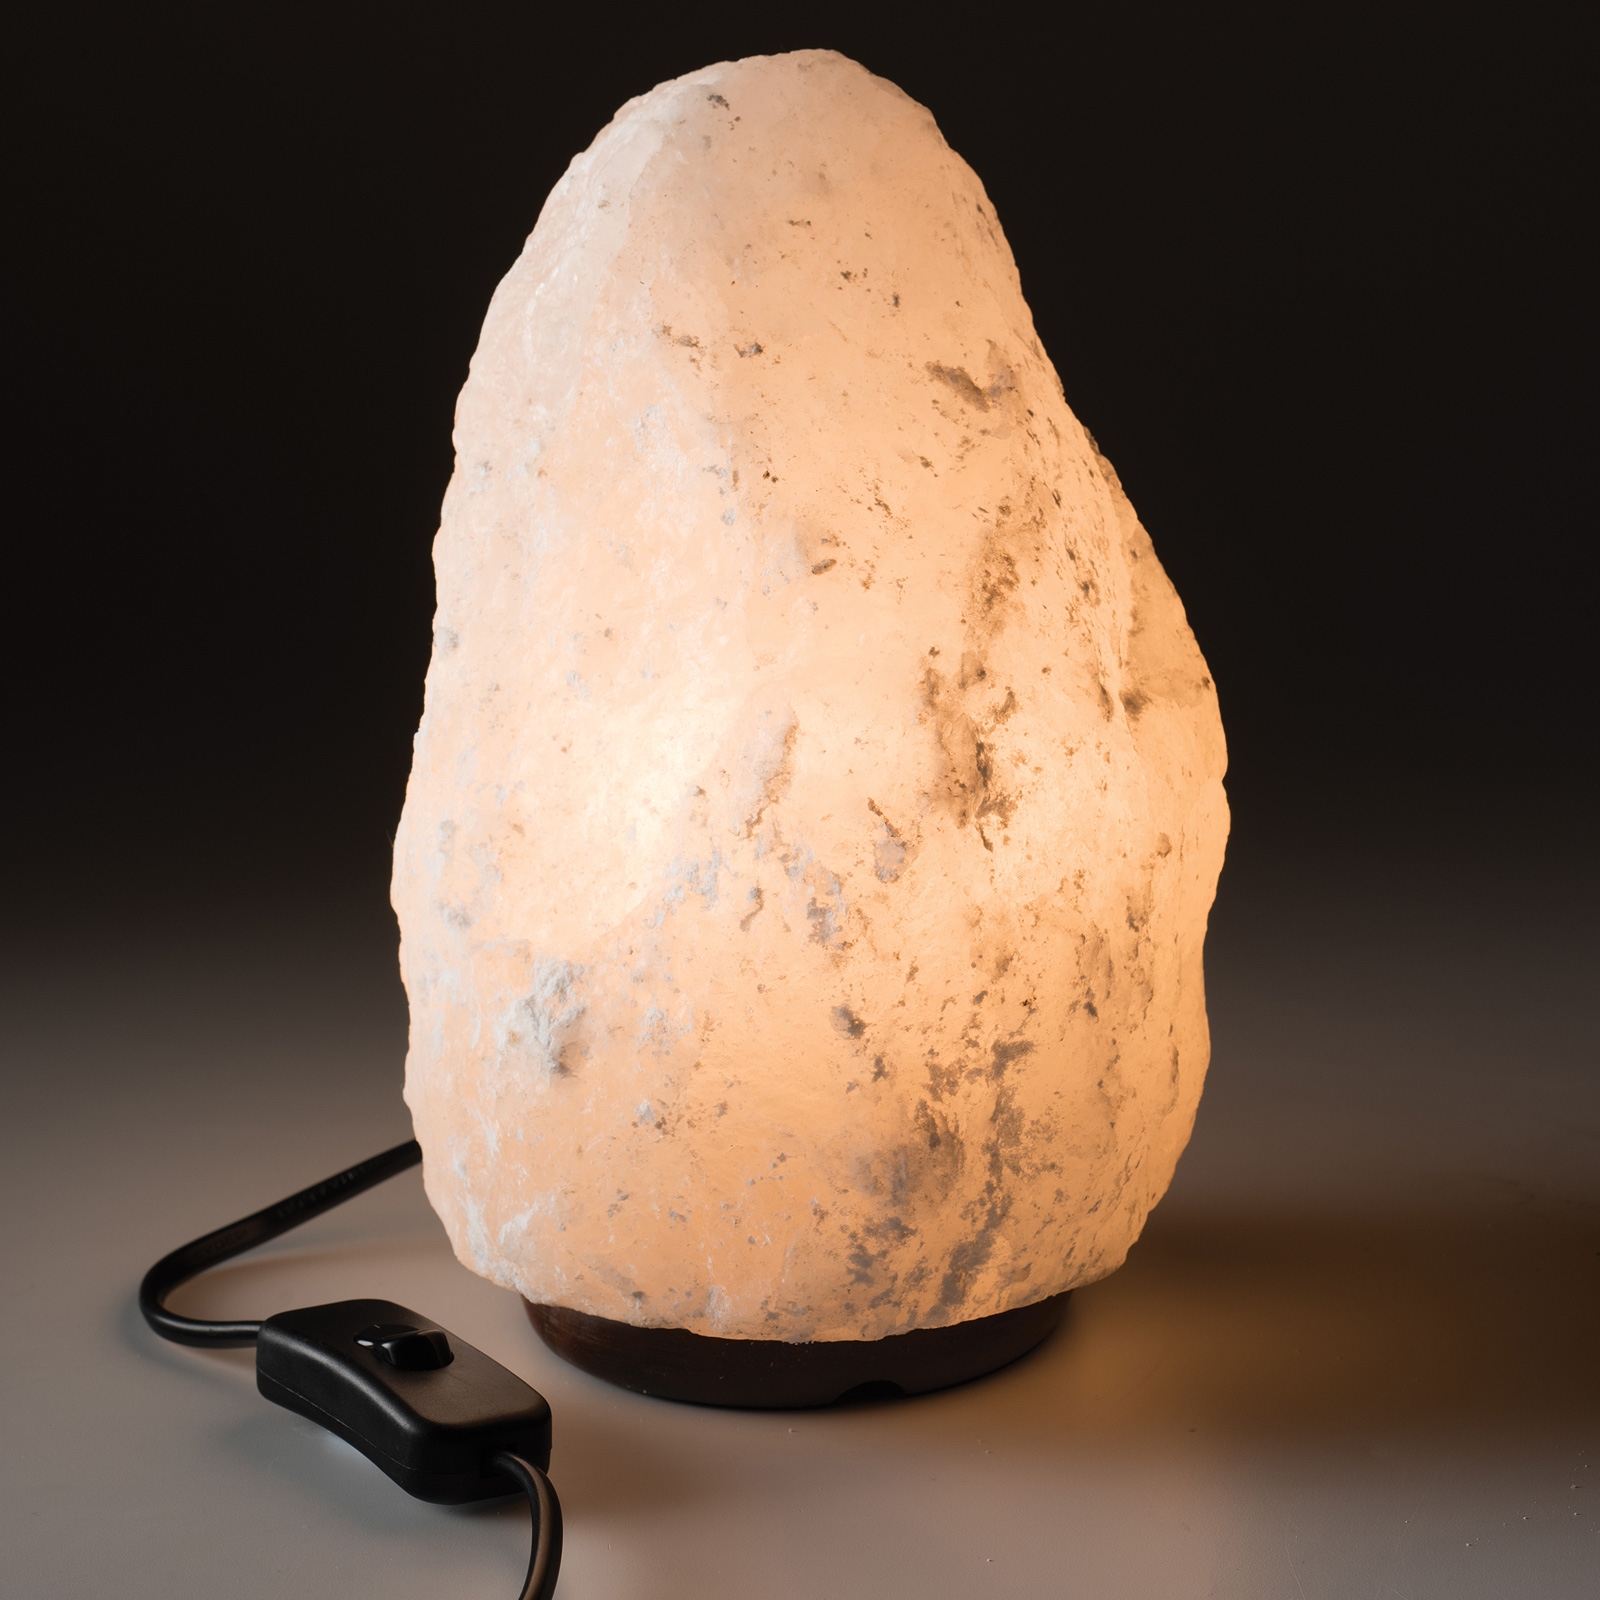 Image of 2-3KG White Himalayan Salt Lamp